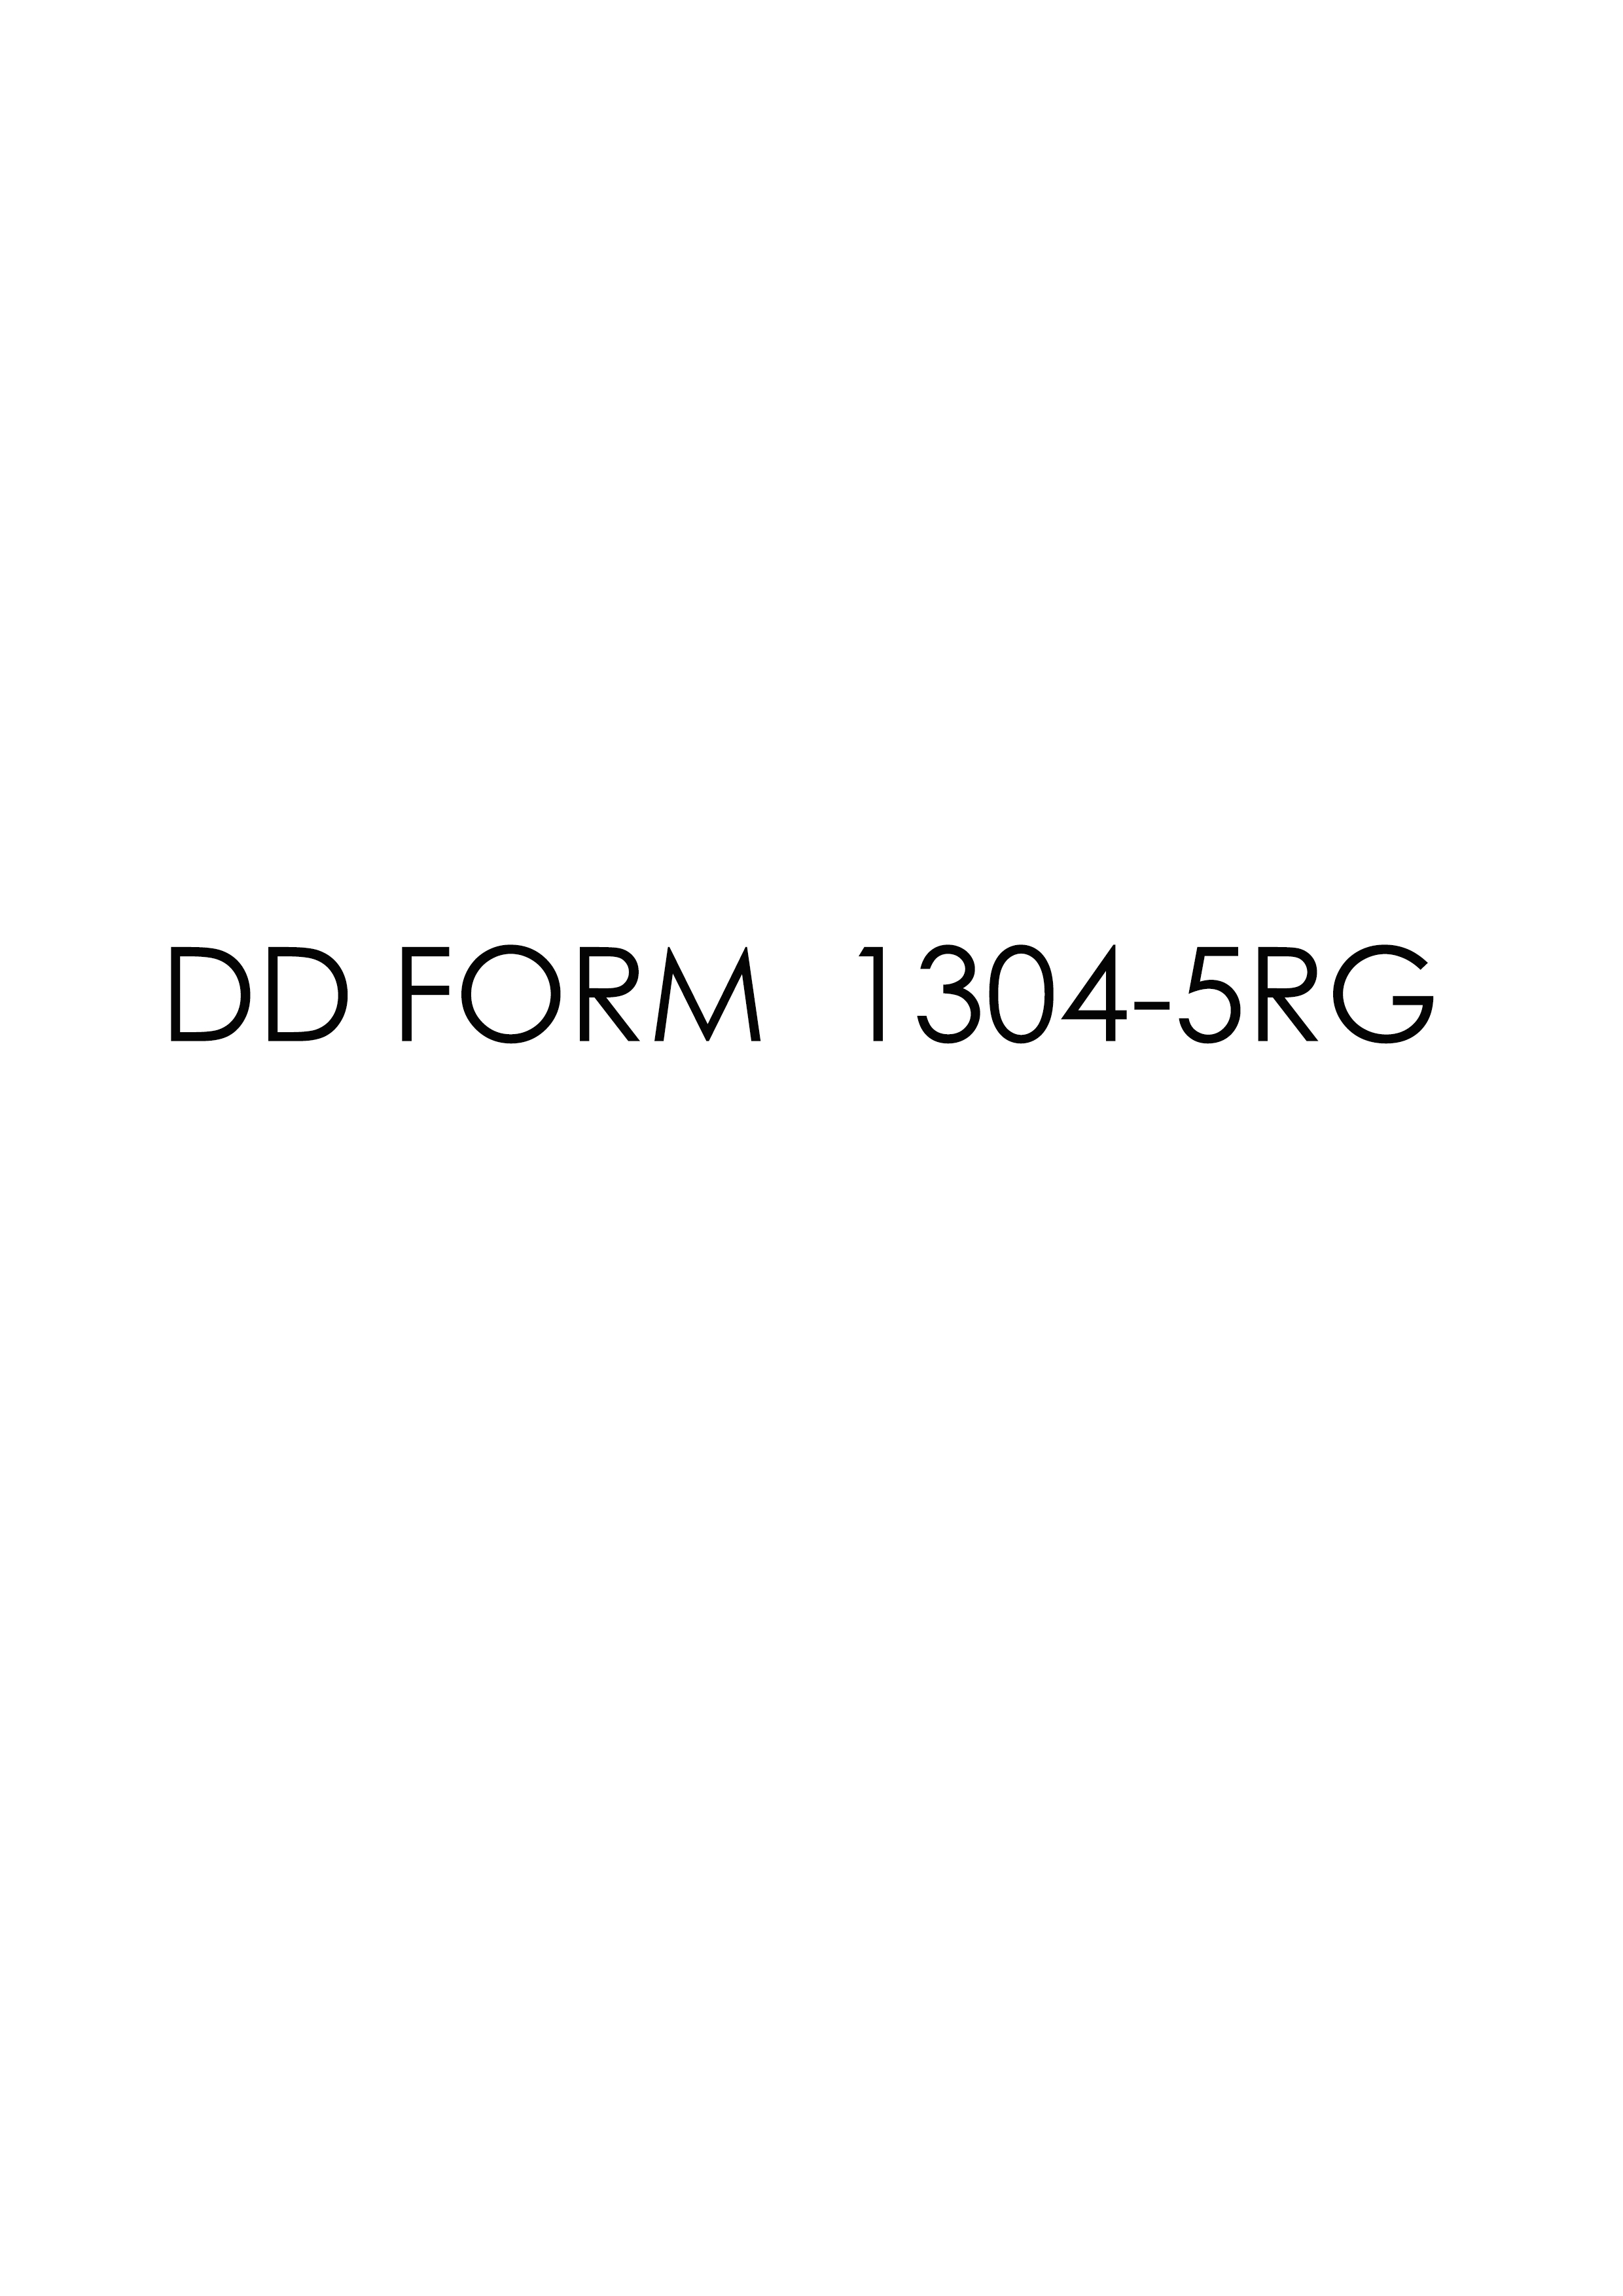 Download dd Form 1304-5RG